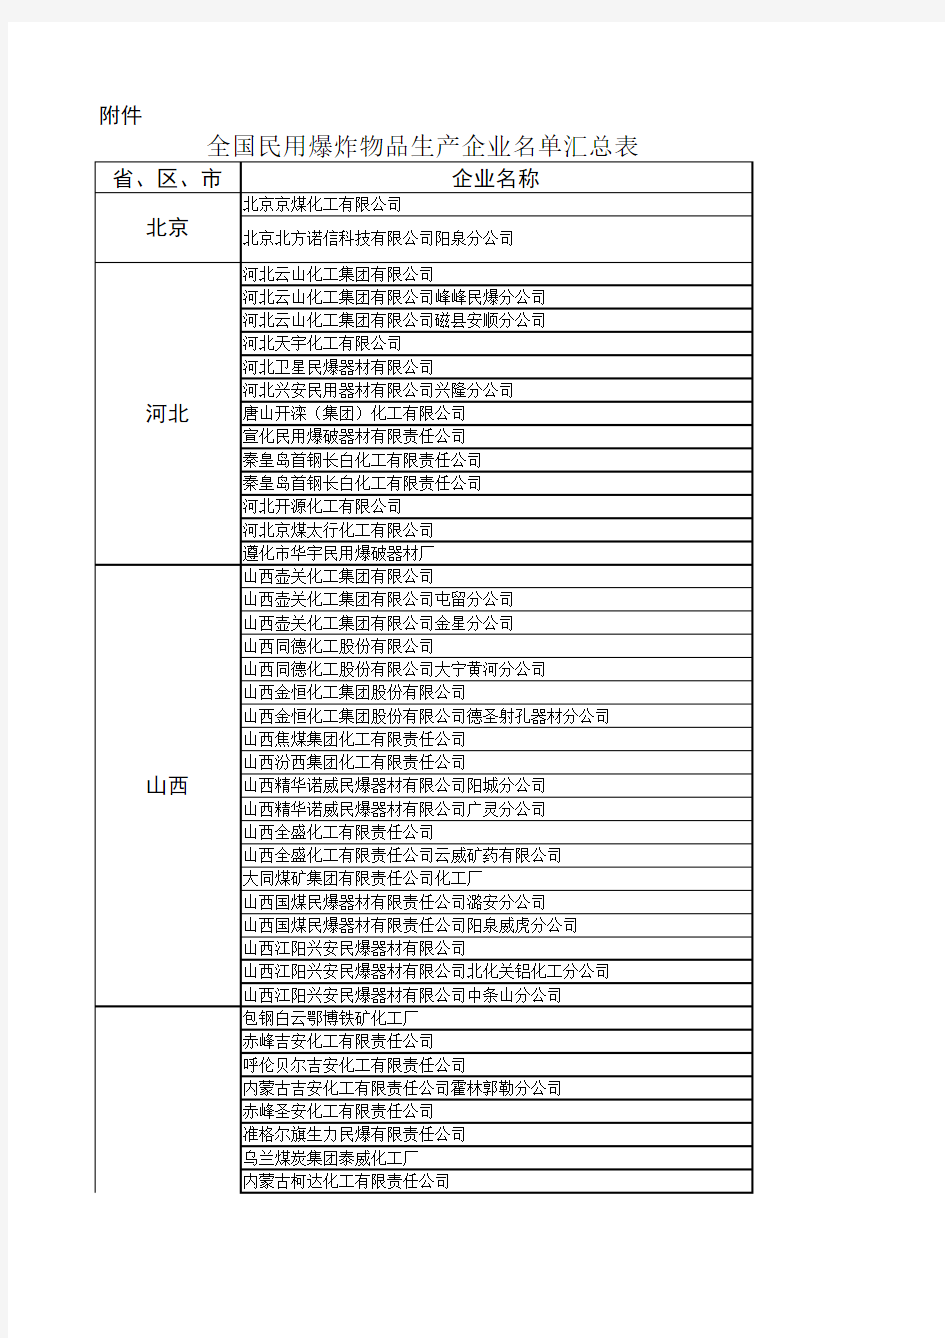 全国民用爆炸物品生产企业名单汇总表